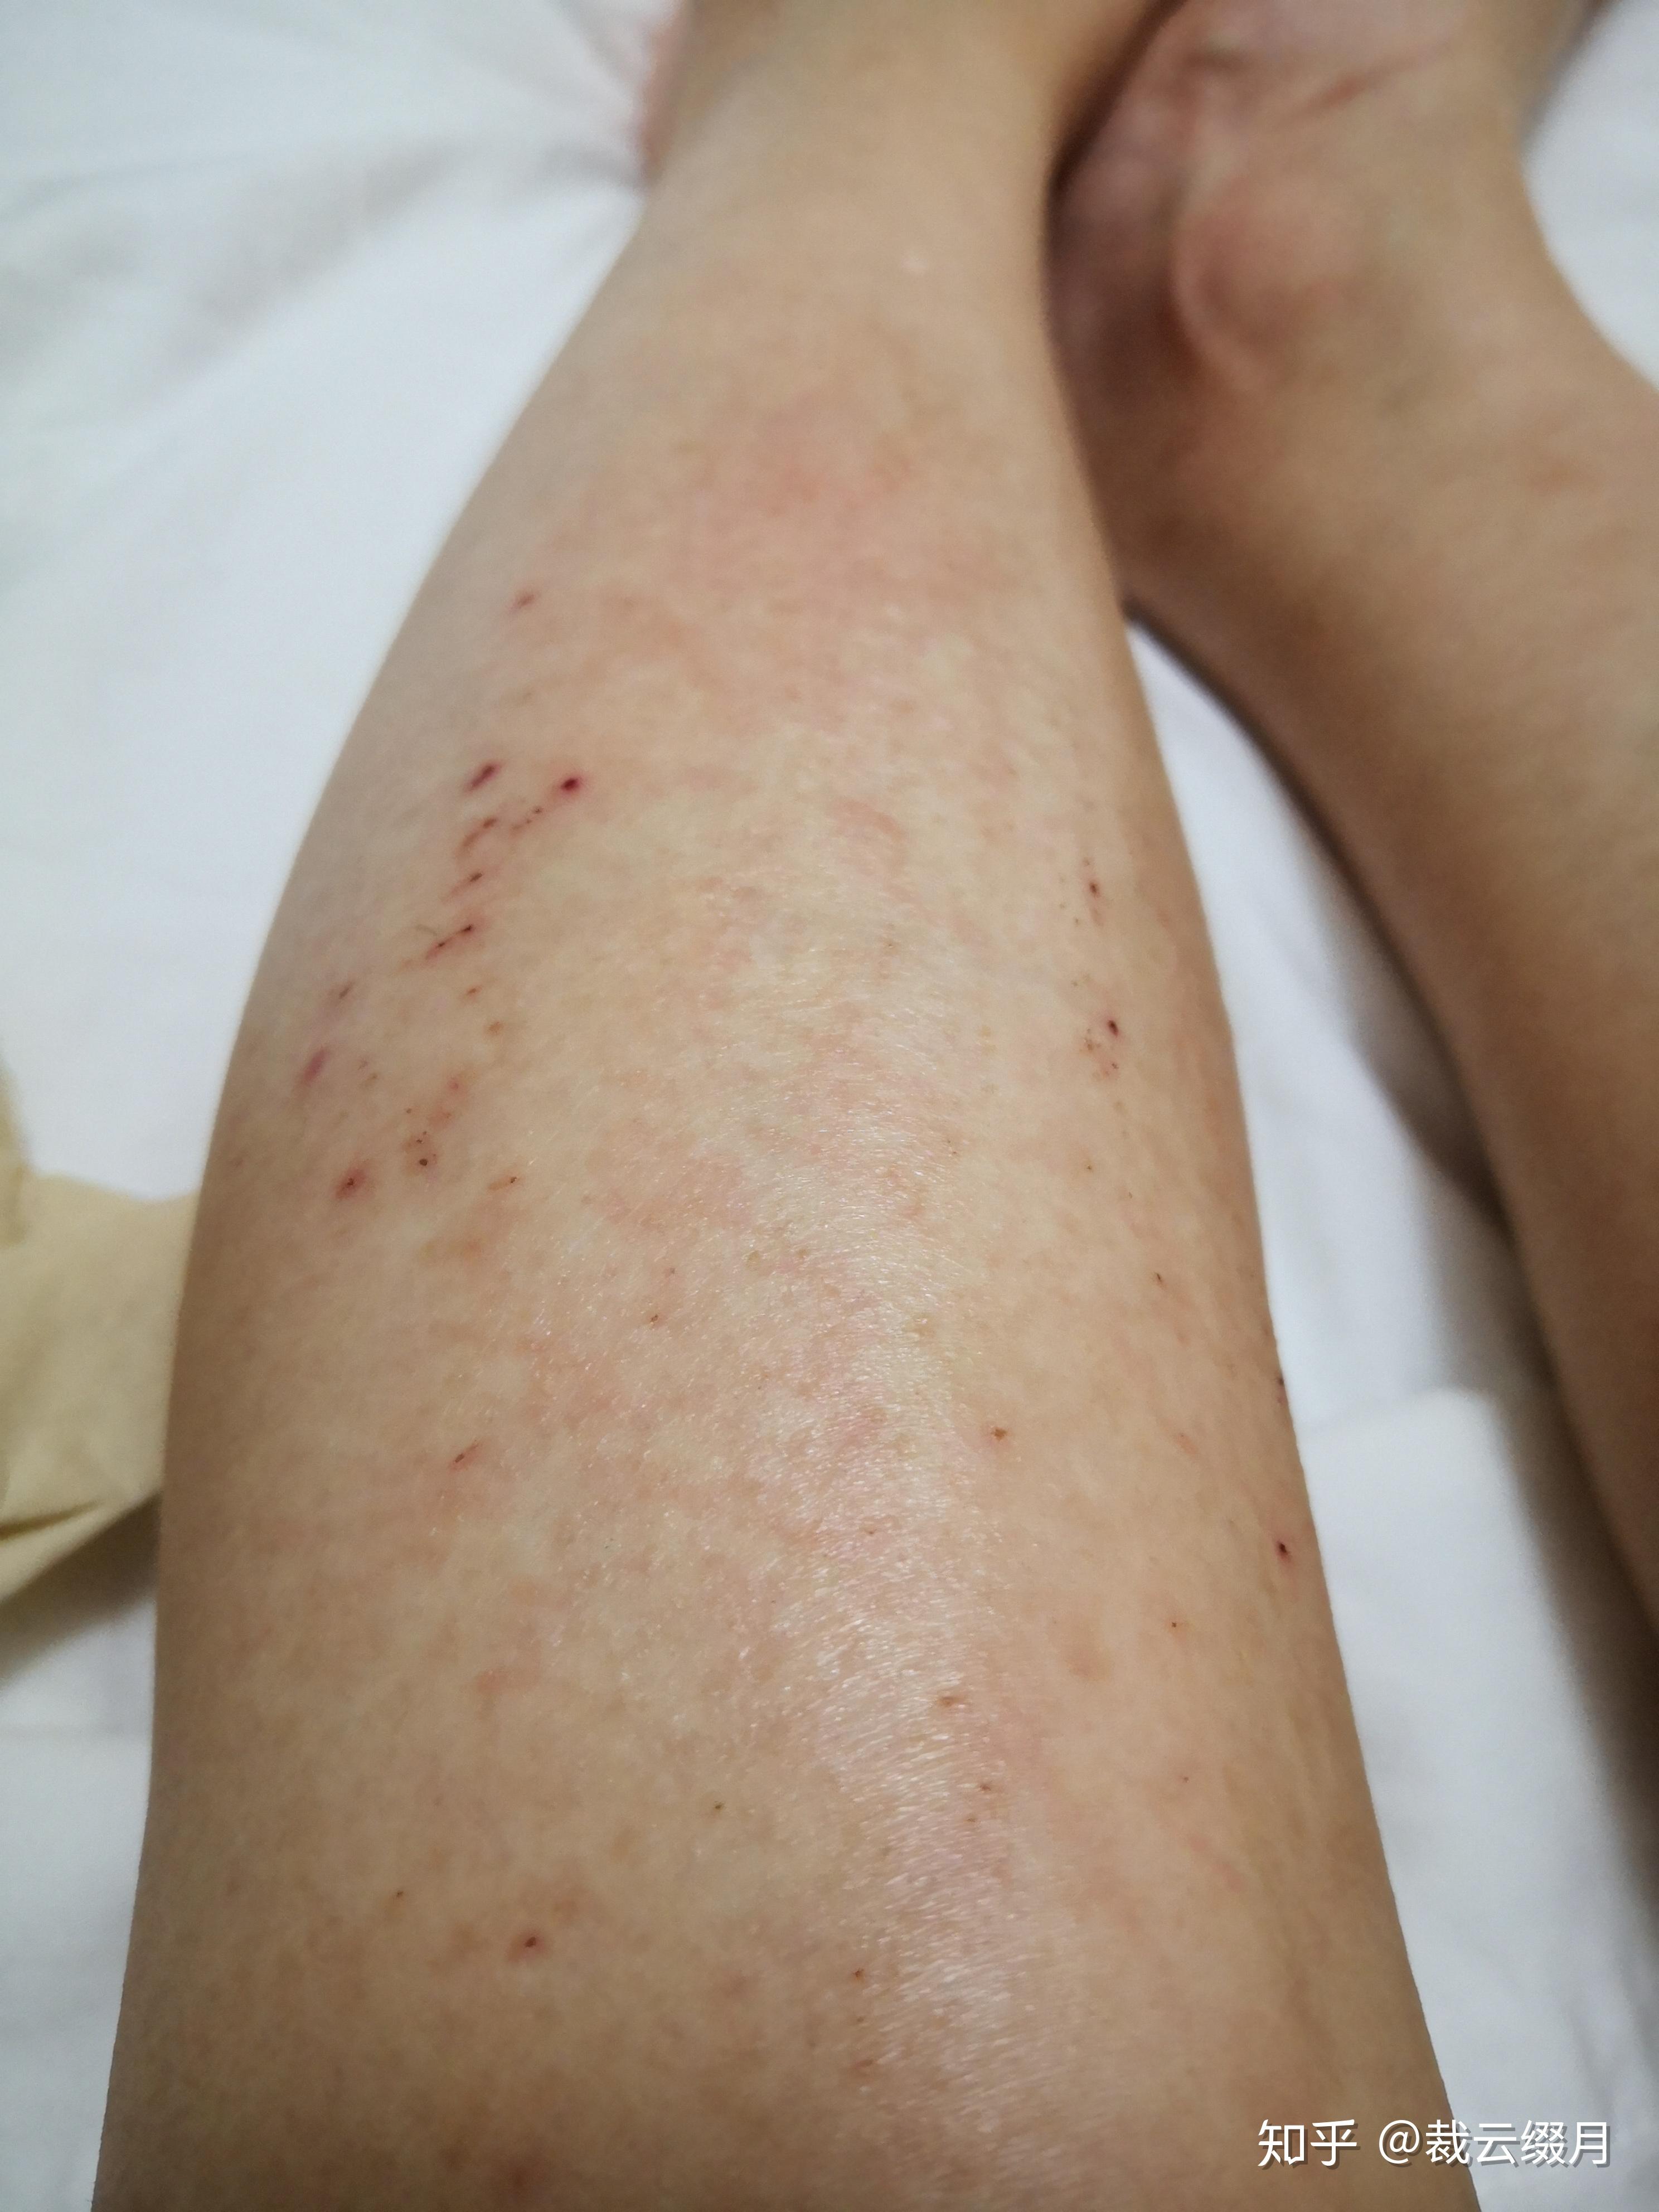 小腿特别痒,持续了两个月了,一直不好,越挠越痒挠破皮结了一腿的疤?